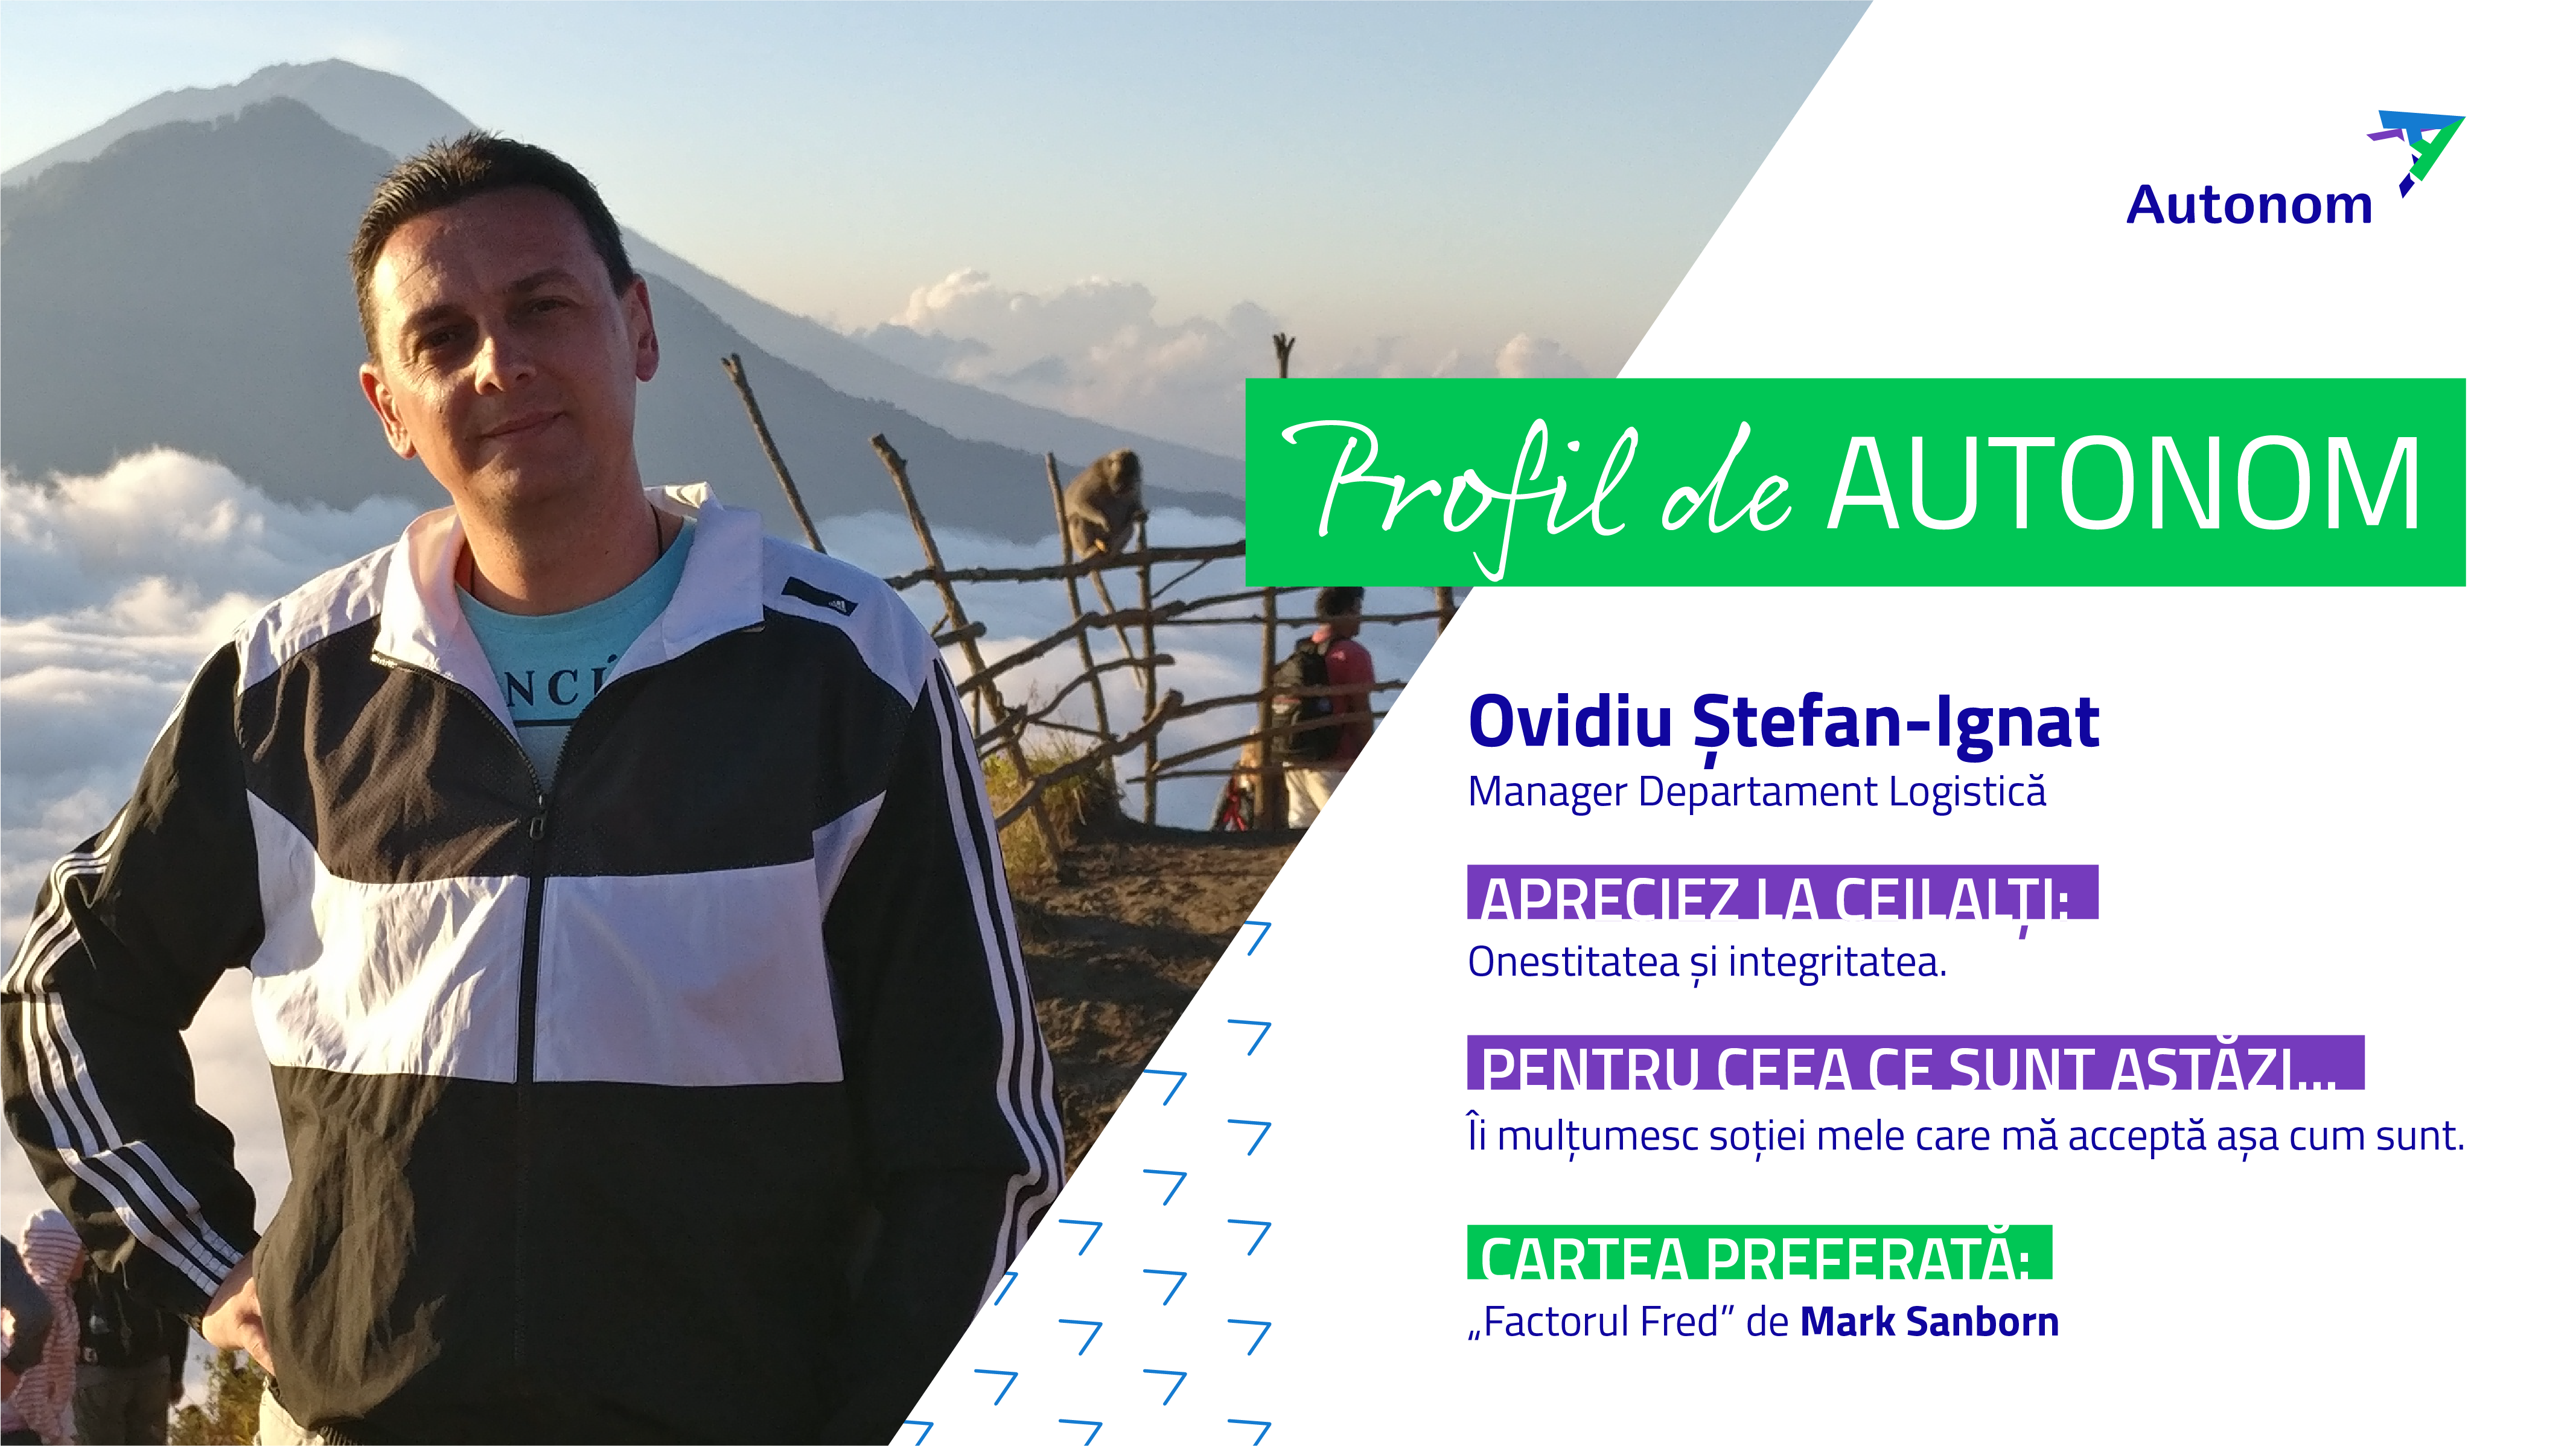 Interviu cu un om fain – Ovidiu Ștefan-Ignat, Manager Departament Logistică în Autonom